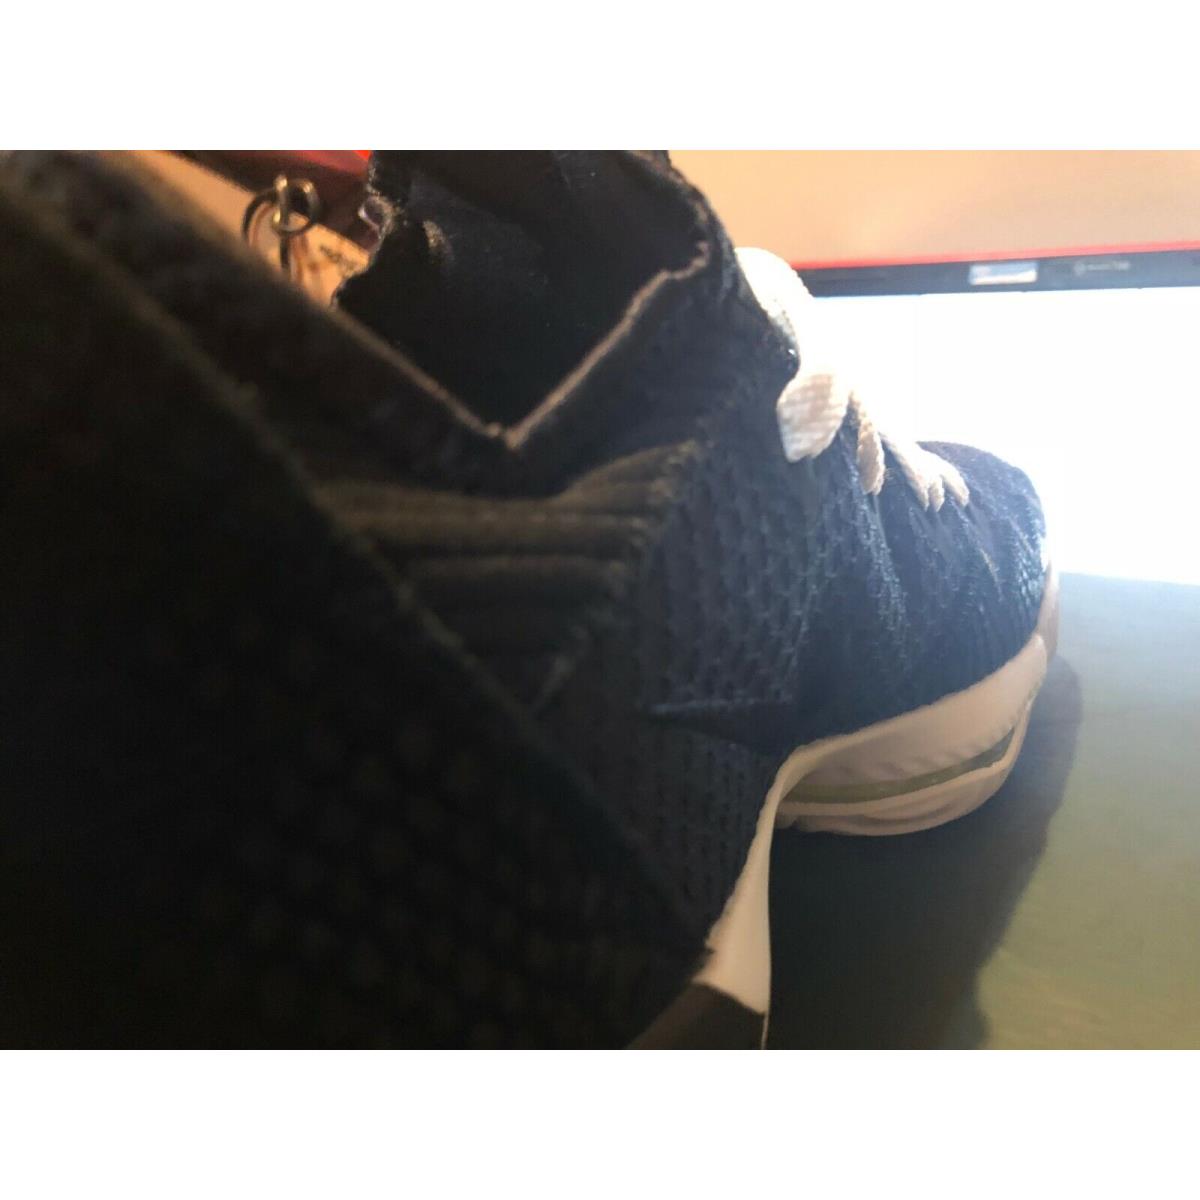 Nike shoes LeBron XVI - Black 4